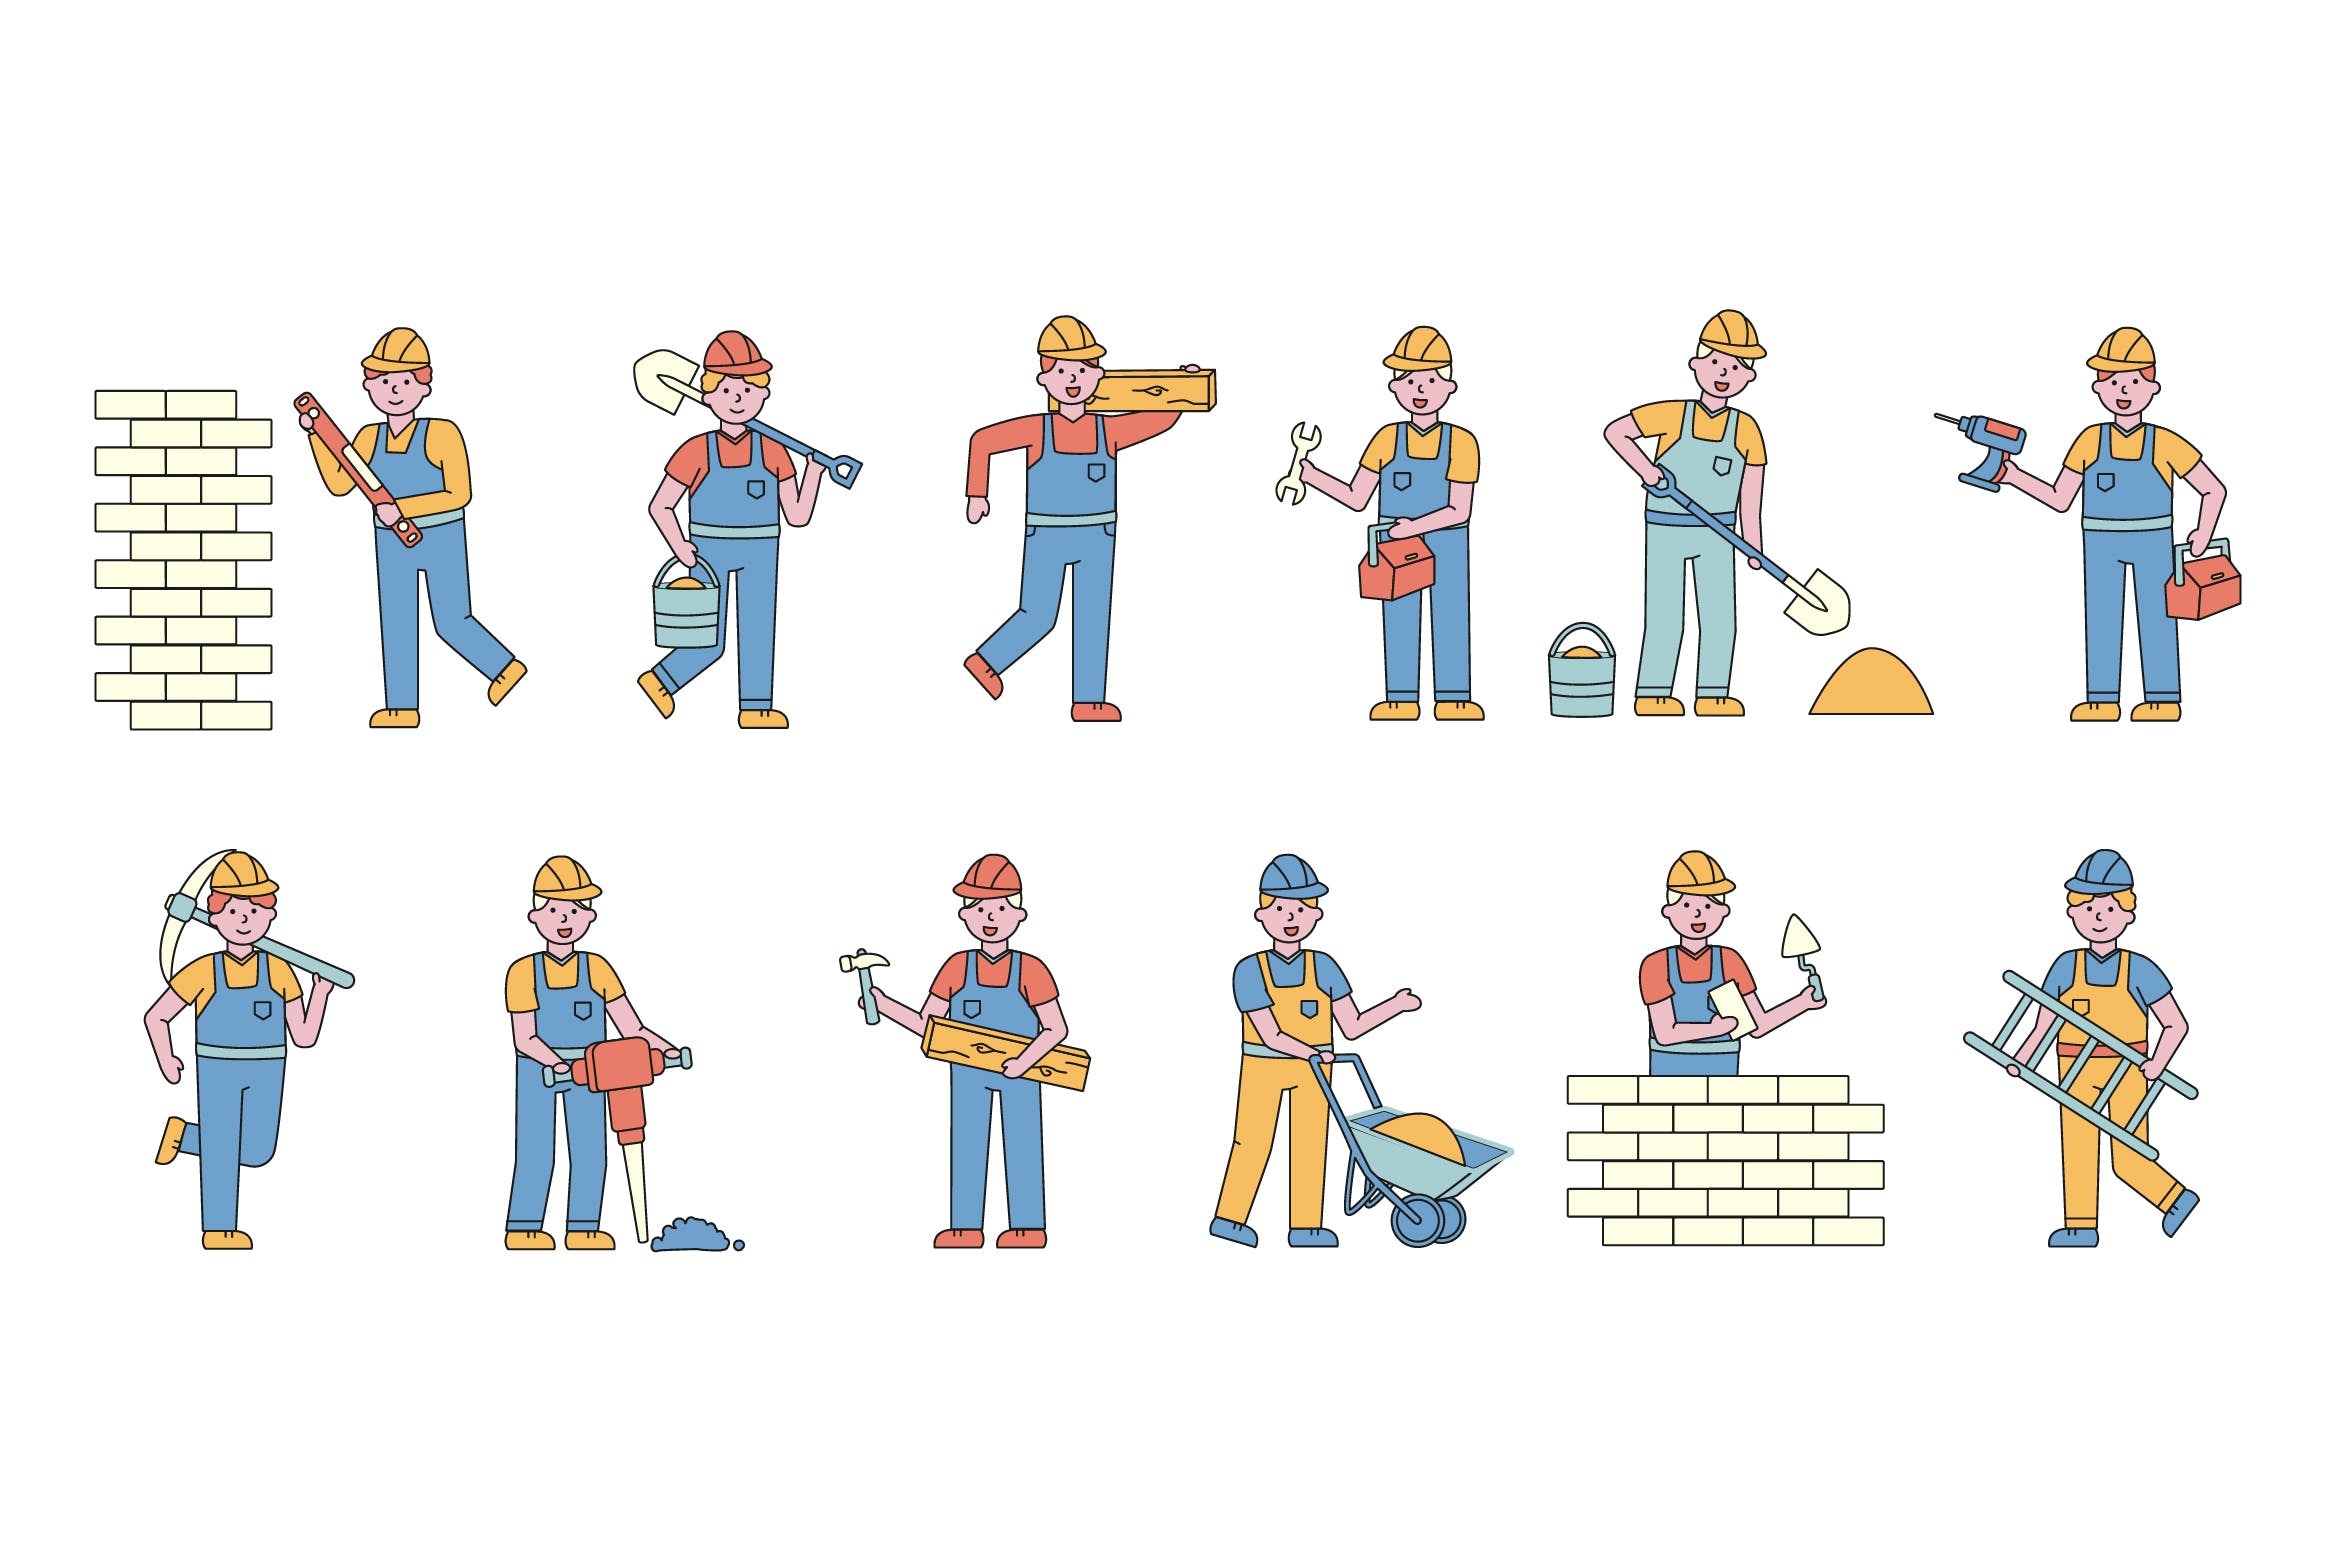 建筑工人人物形象线条艺术矢量插画普贤居精选素材 Builders Lineart People Character Collection插图